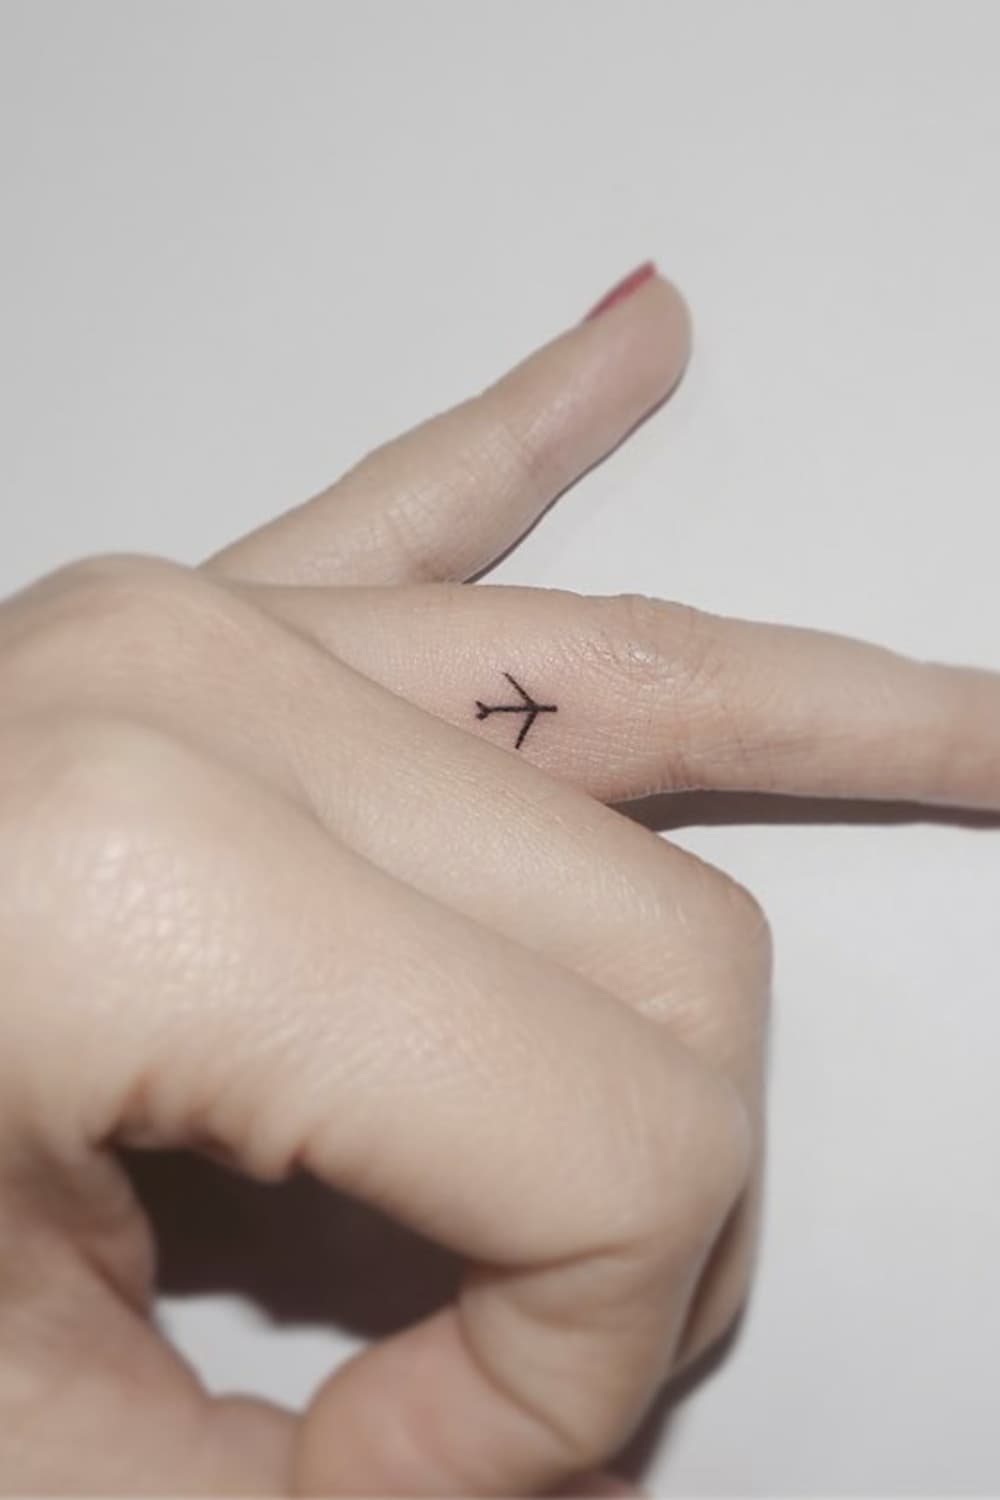 Tiny Airplane tattoo